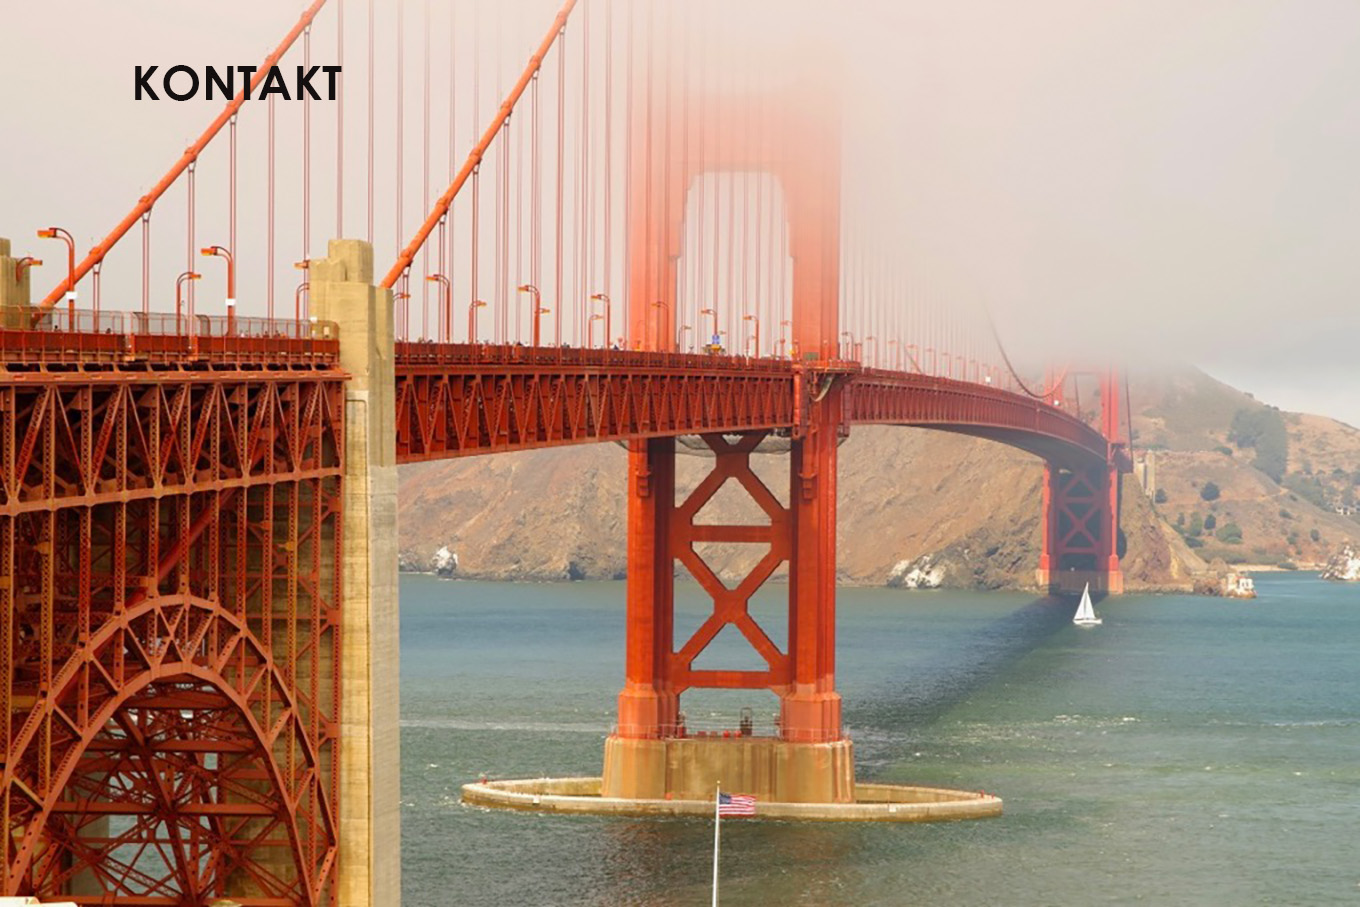 Golden Gate Bridge mit Schriftzug "Kontakt"